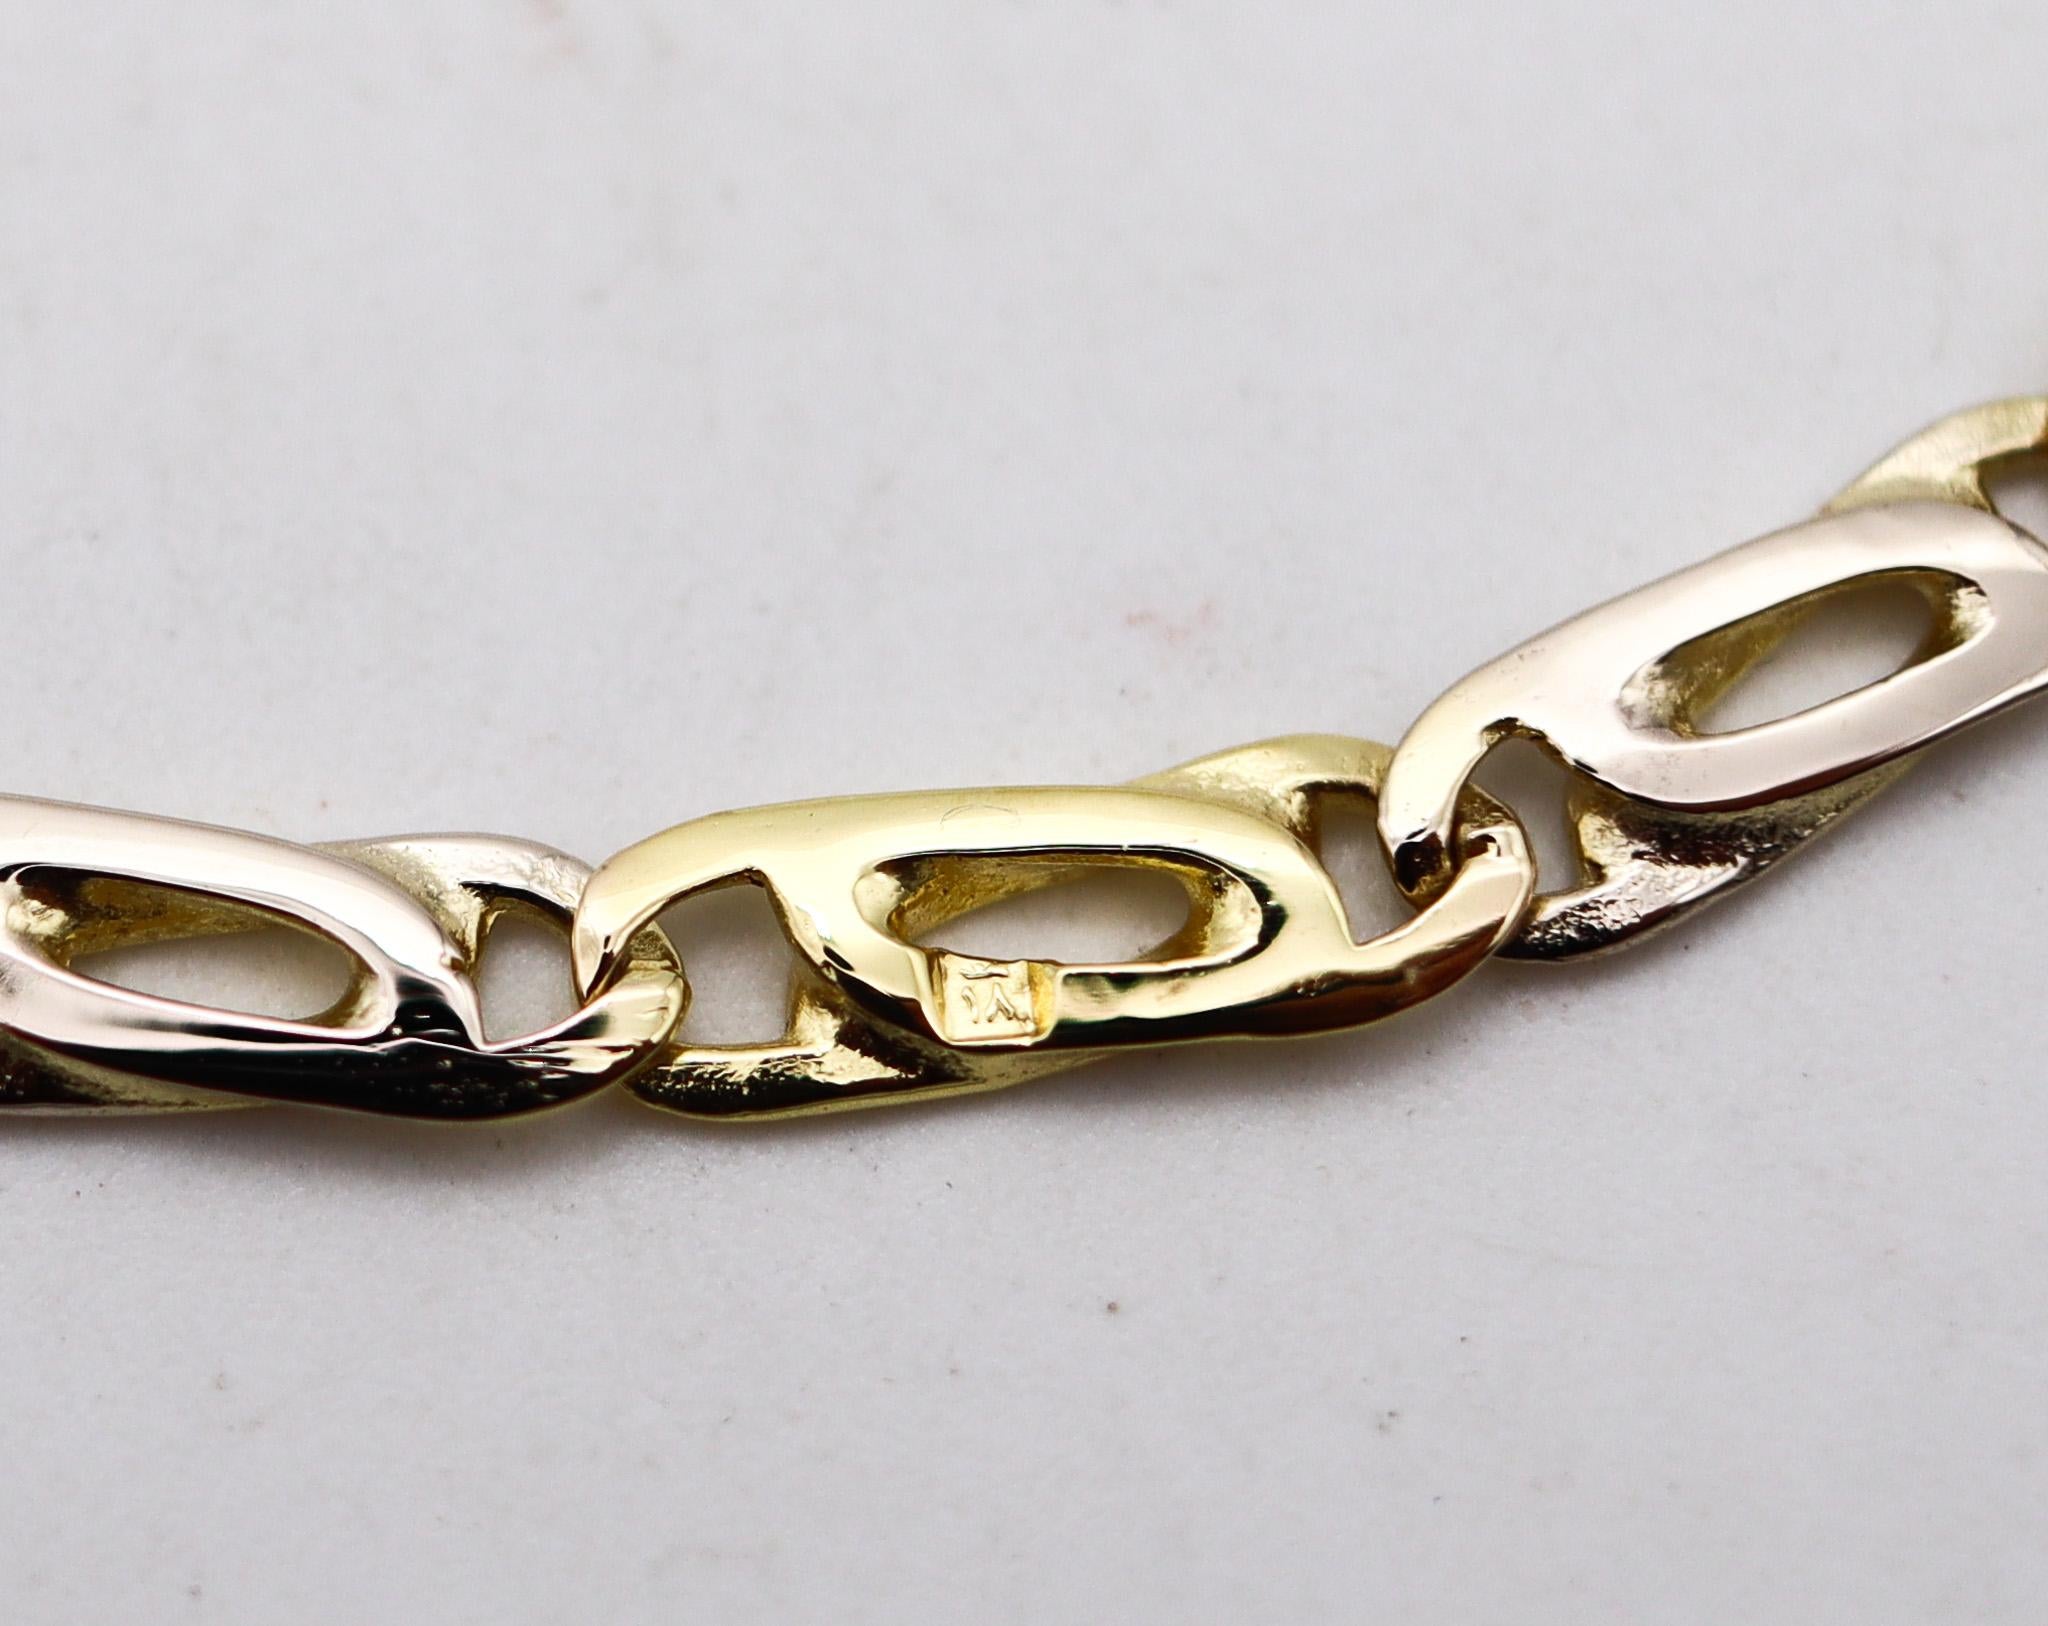 Eine italienische zwei Töne Goldkette Halskette.

Schöne modernistische Kette aus Italien mit ausgefallenen Gliedern. Gefertigt aus massivem Weiß- und Gelbgold von 18 Karat und hochglanzpoliert. Ausgestattet mit einem individuellen